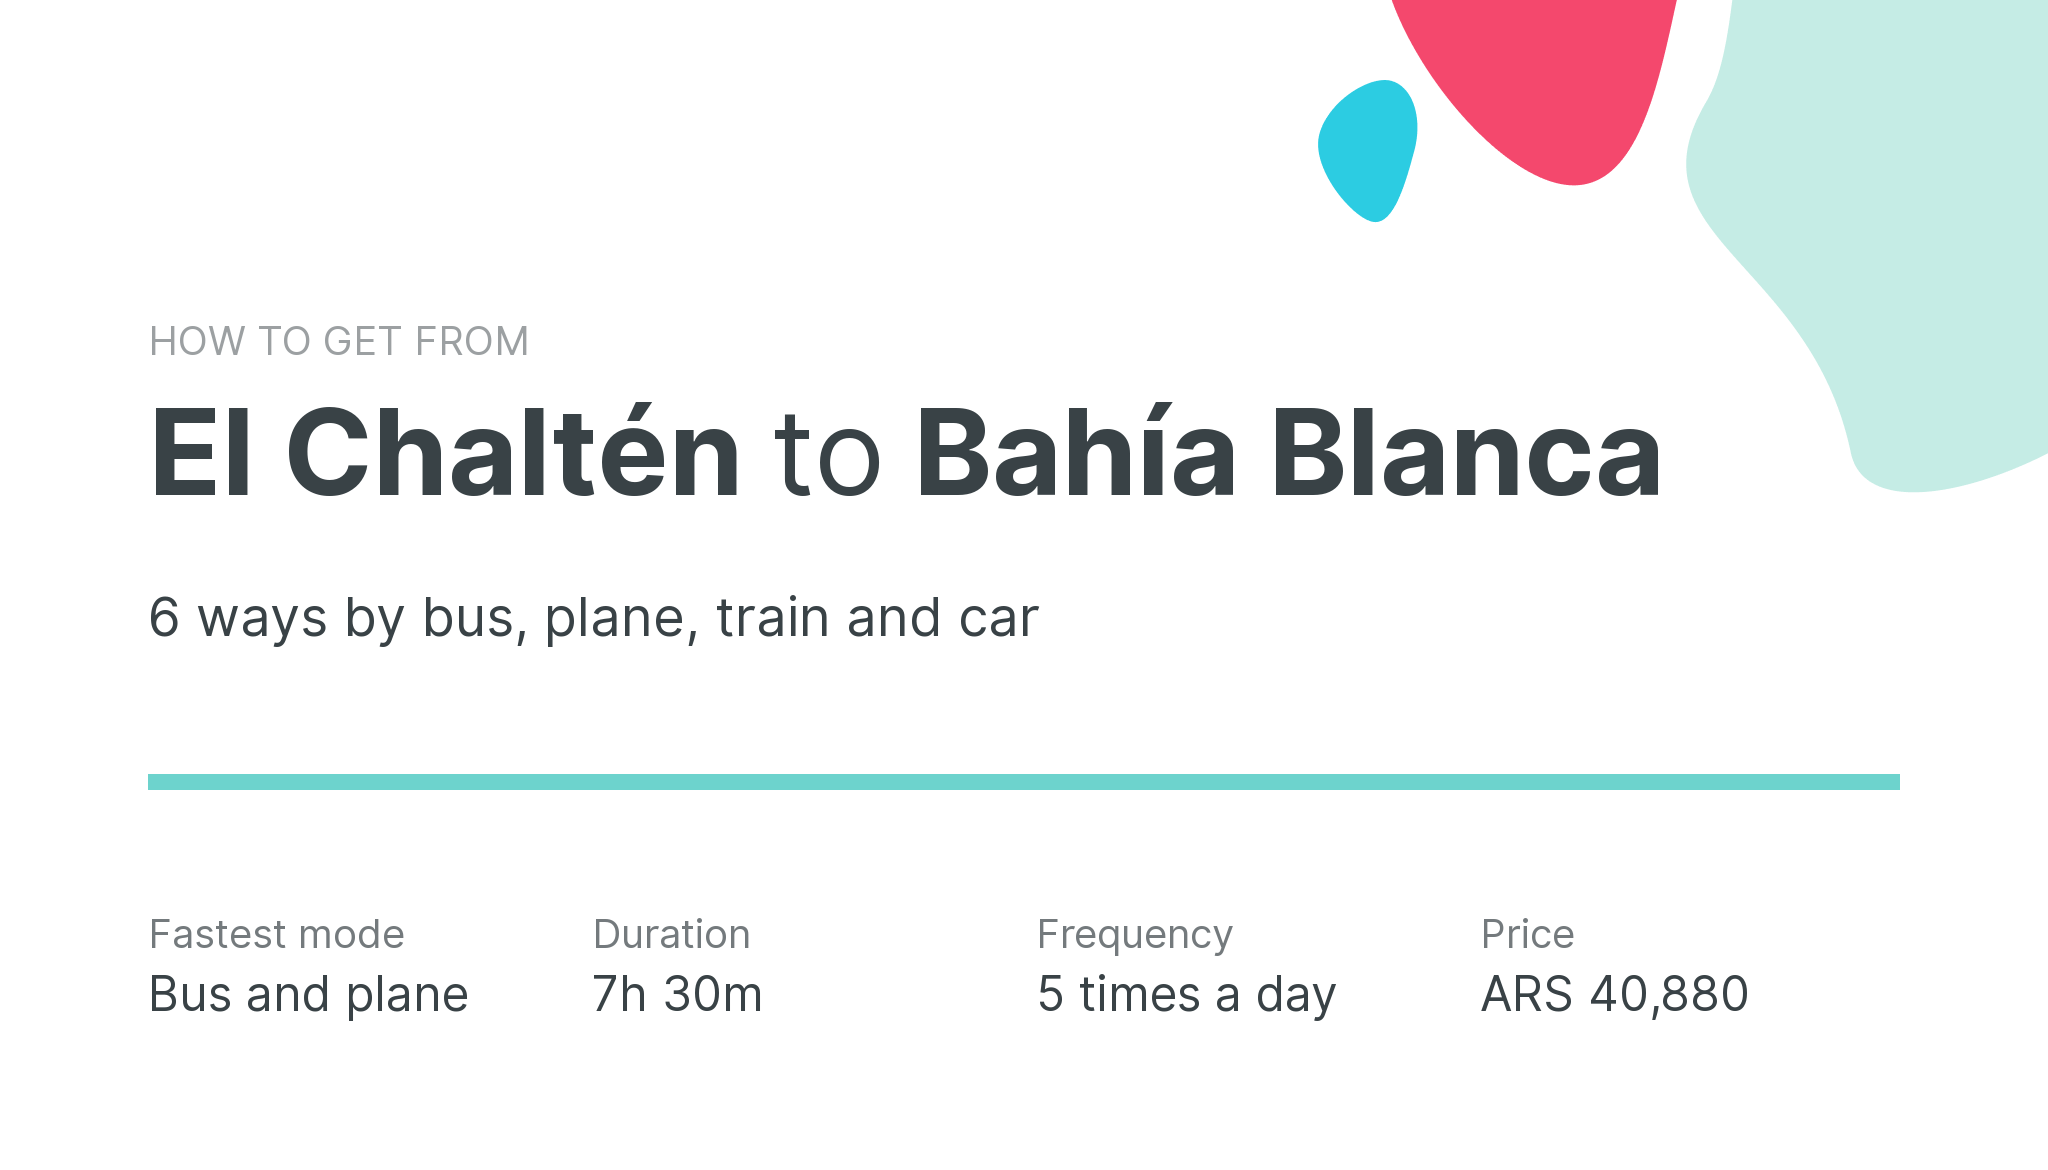 How do I get from El Chaltén to Bahía Blanca